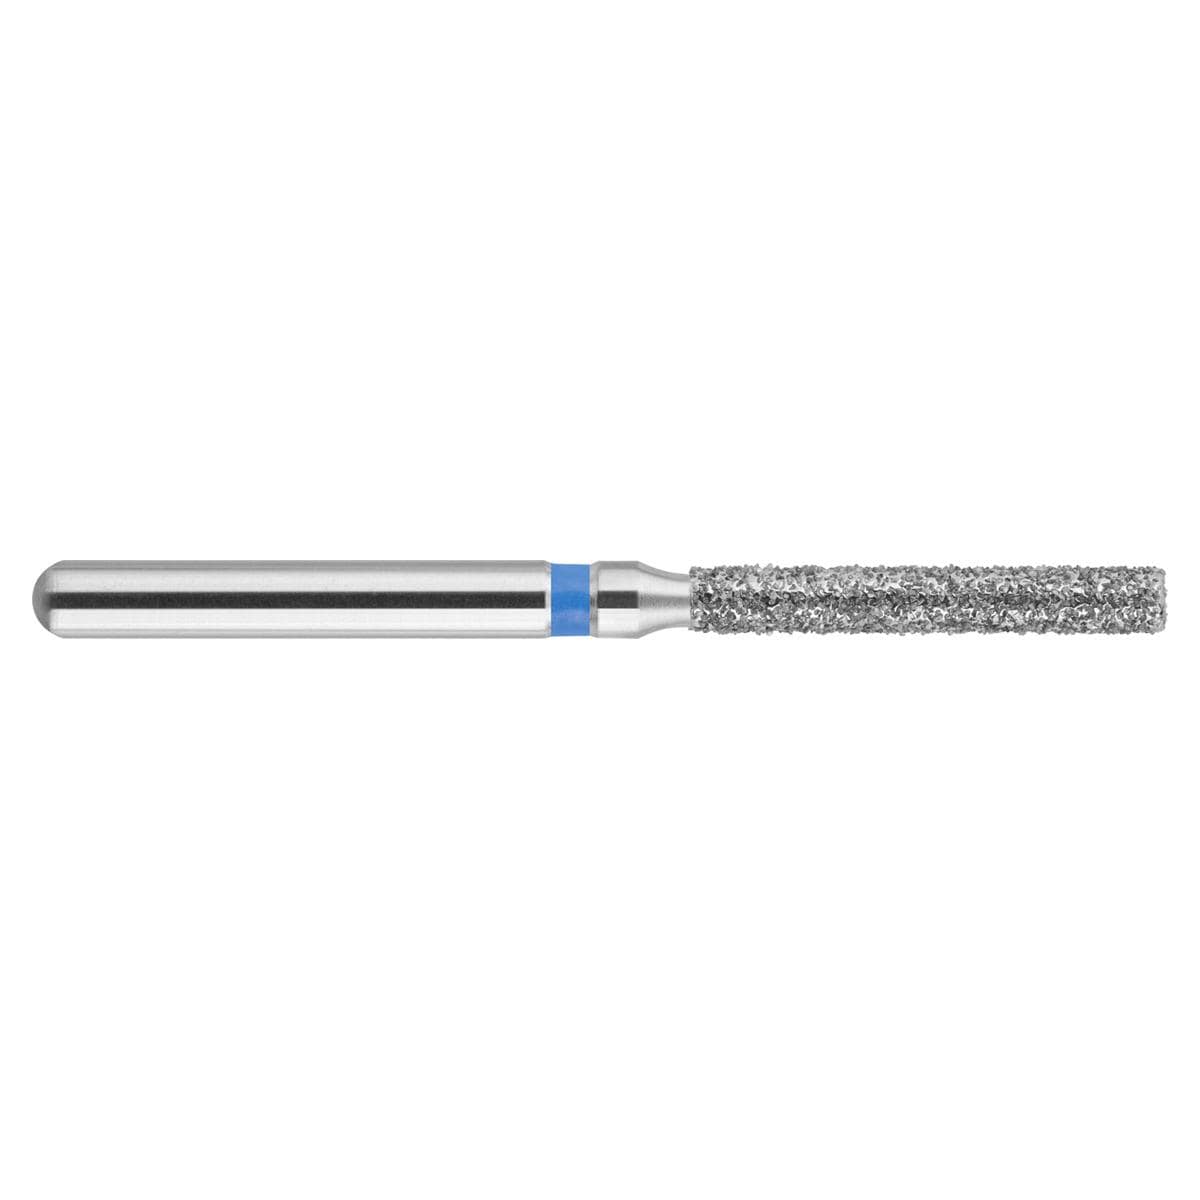 NeoDiamond FG, Form 112, Zylinder flach - ISO 014, mittel (blau), Packung 10 Stück